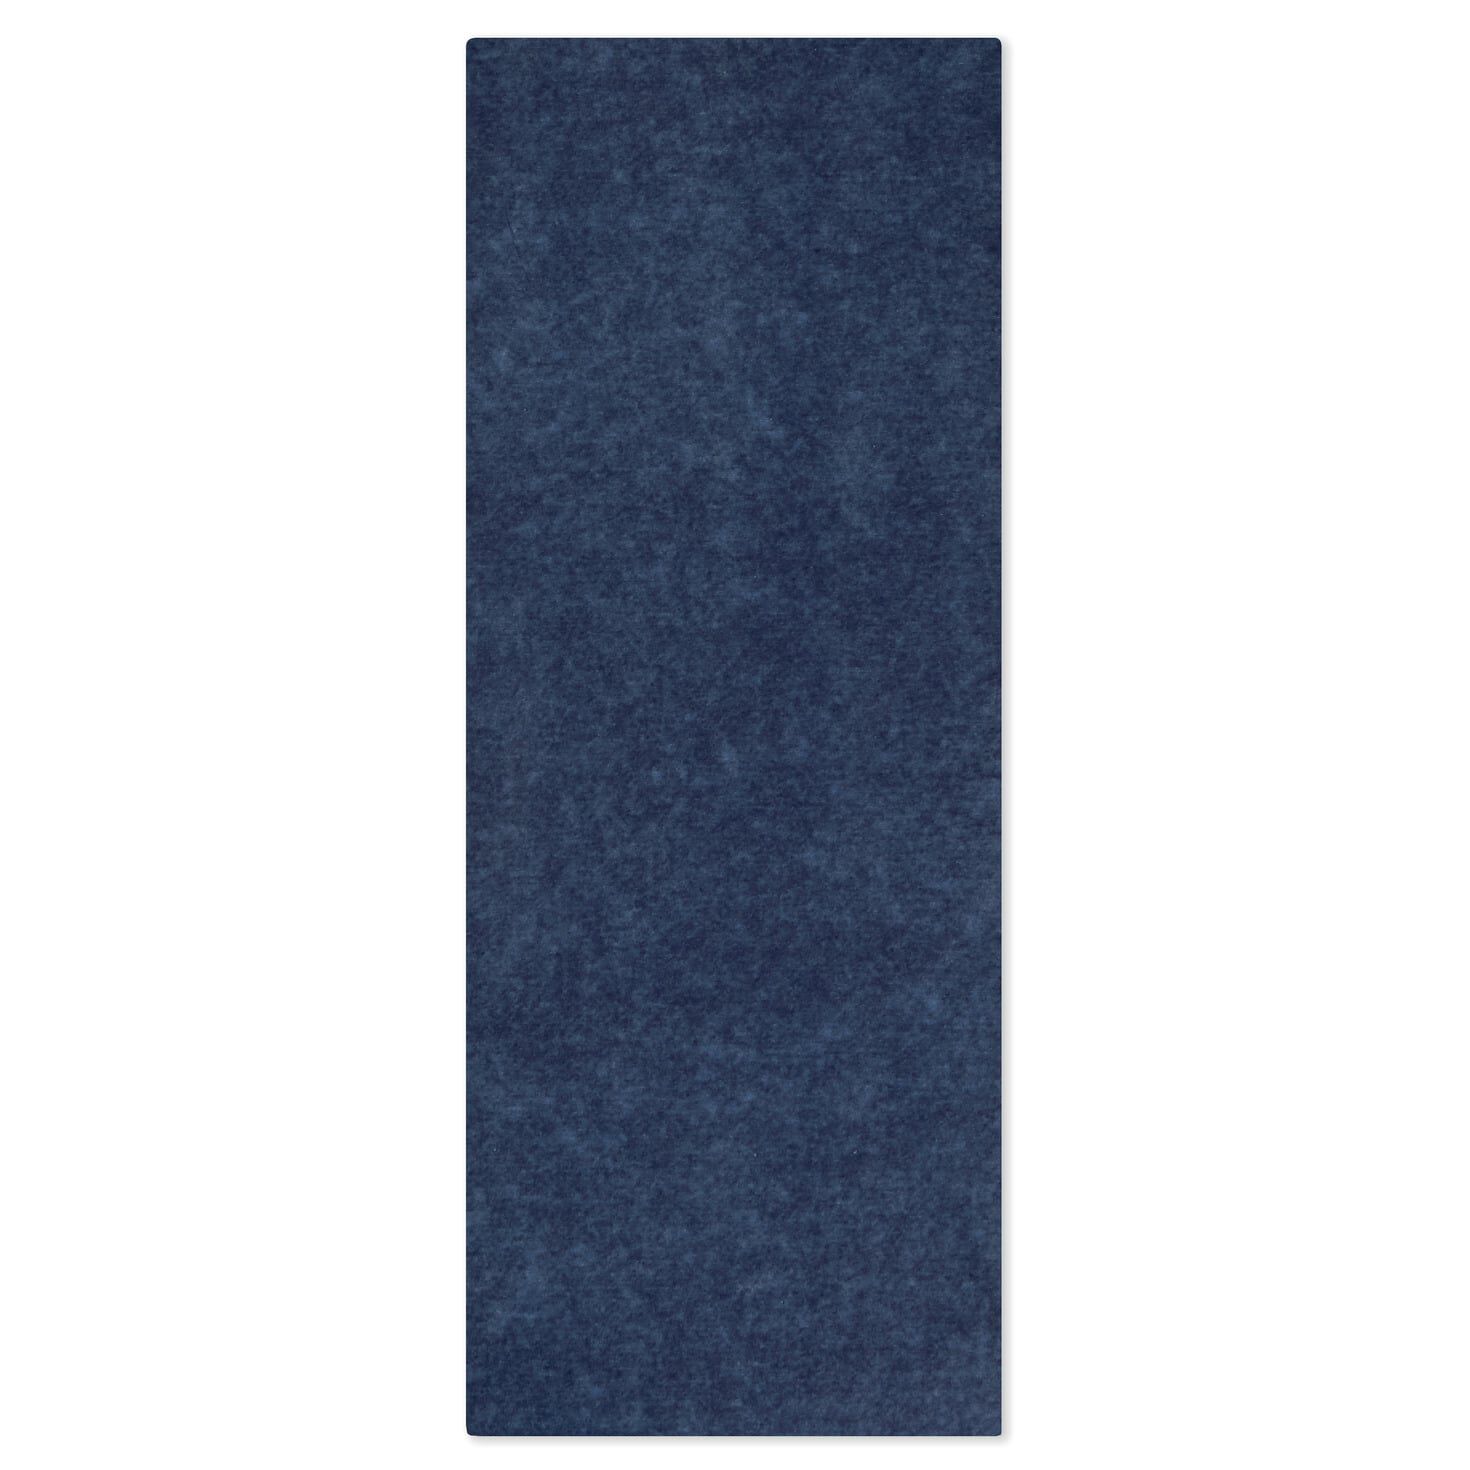 Navy Blue Economy Tissue Paper